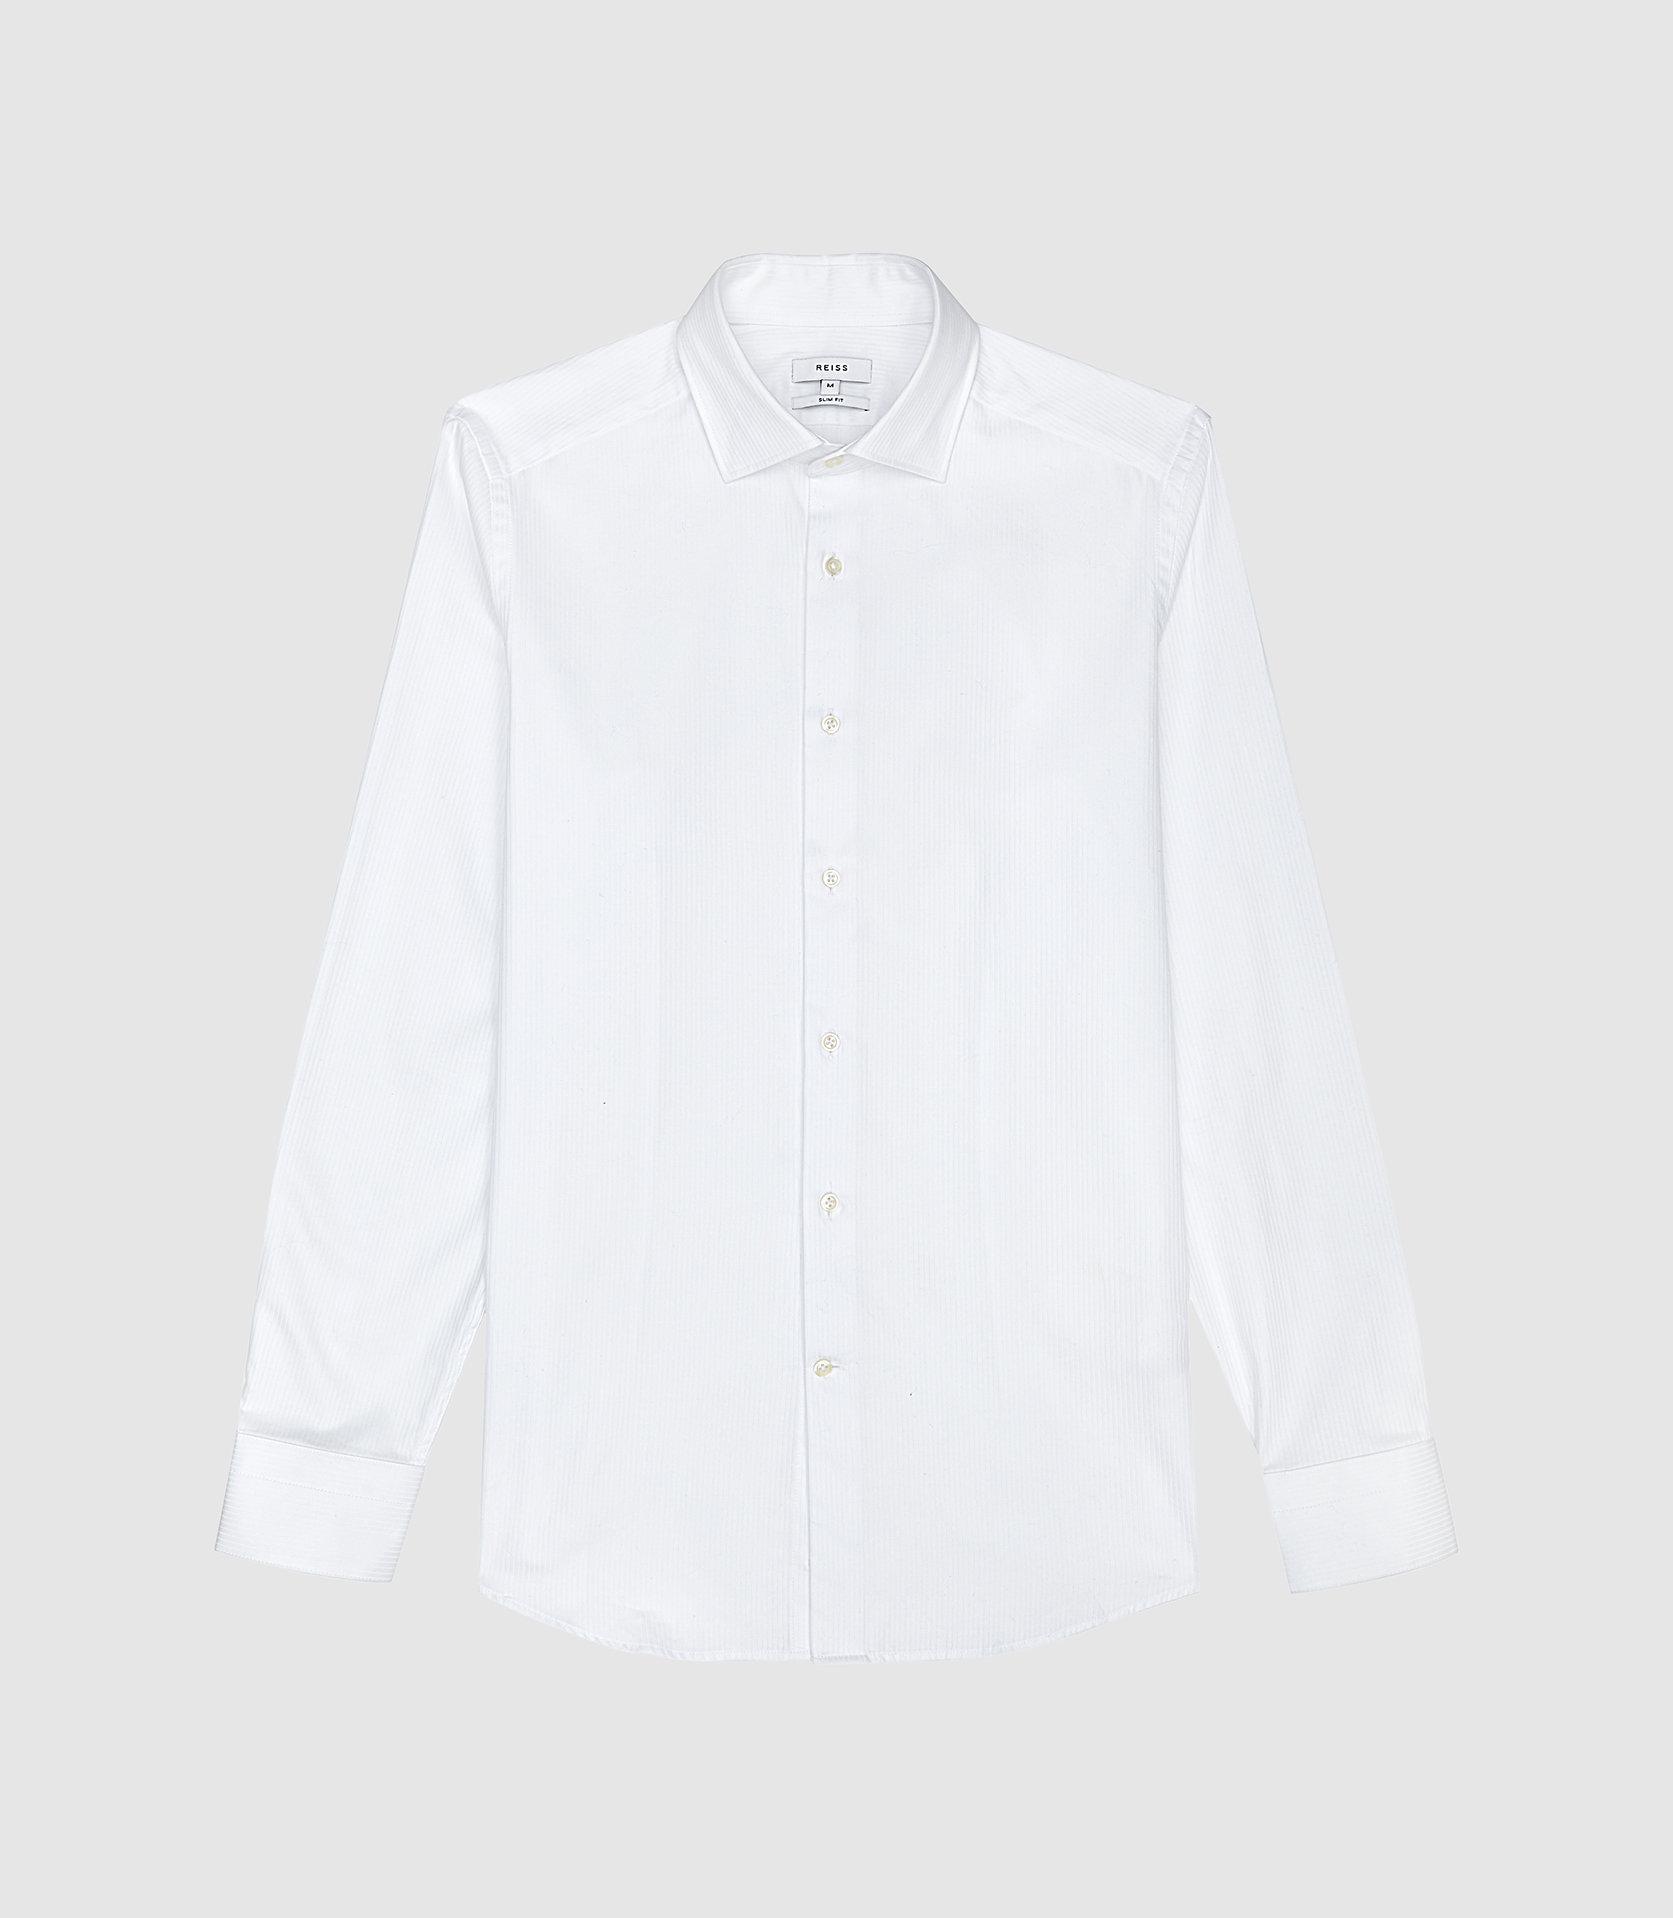 Reiss Self-stripe Slim Fit Shirt in White for Men - Lyst